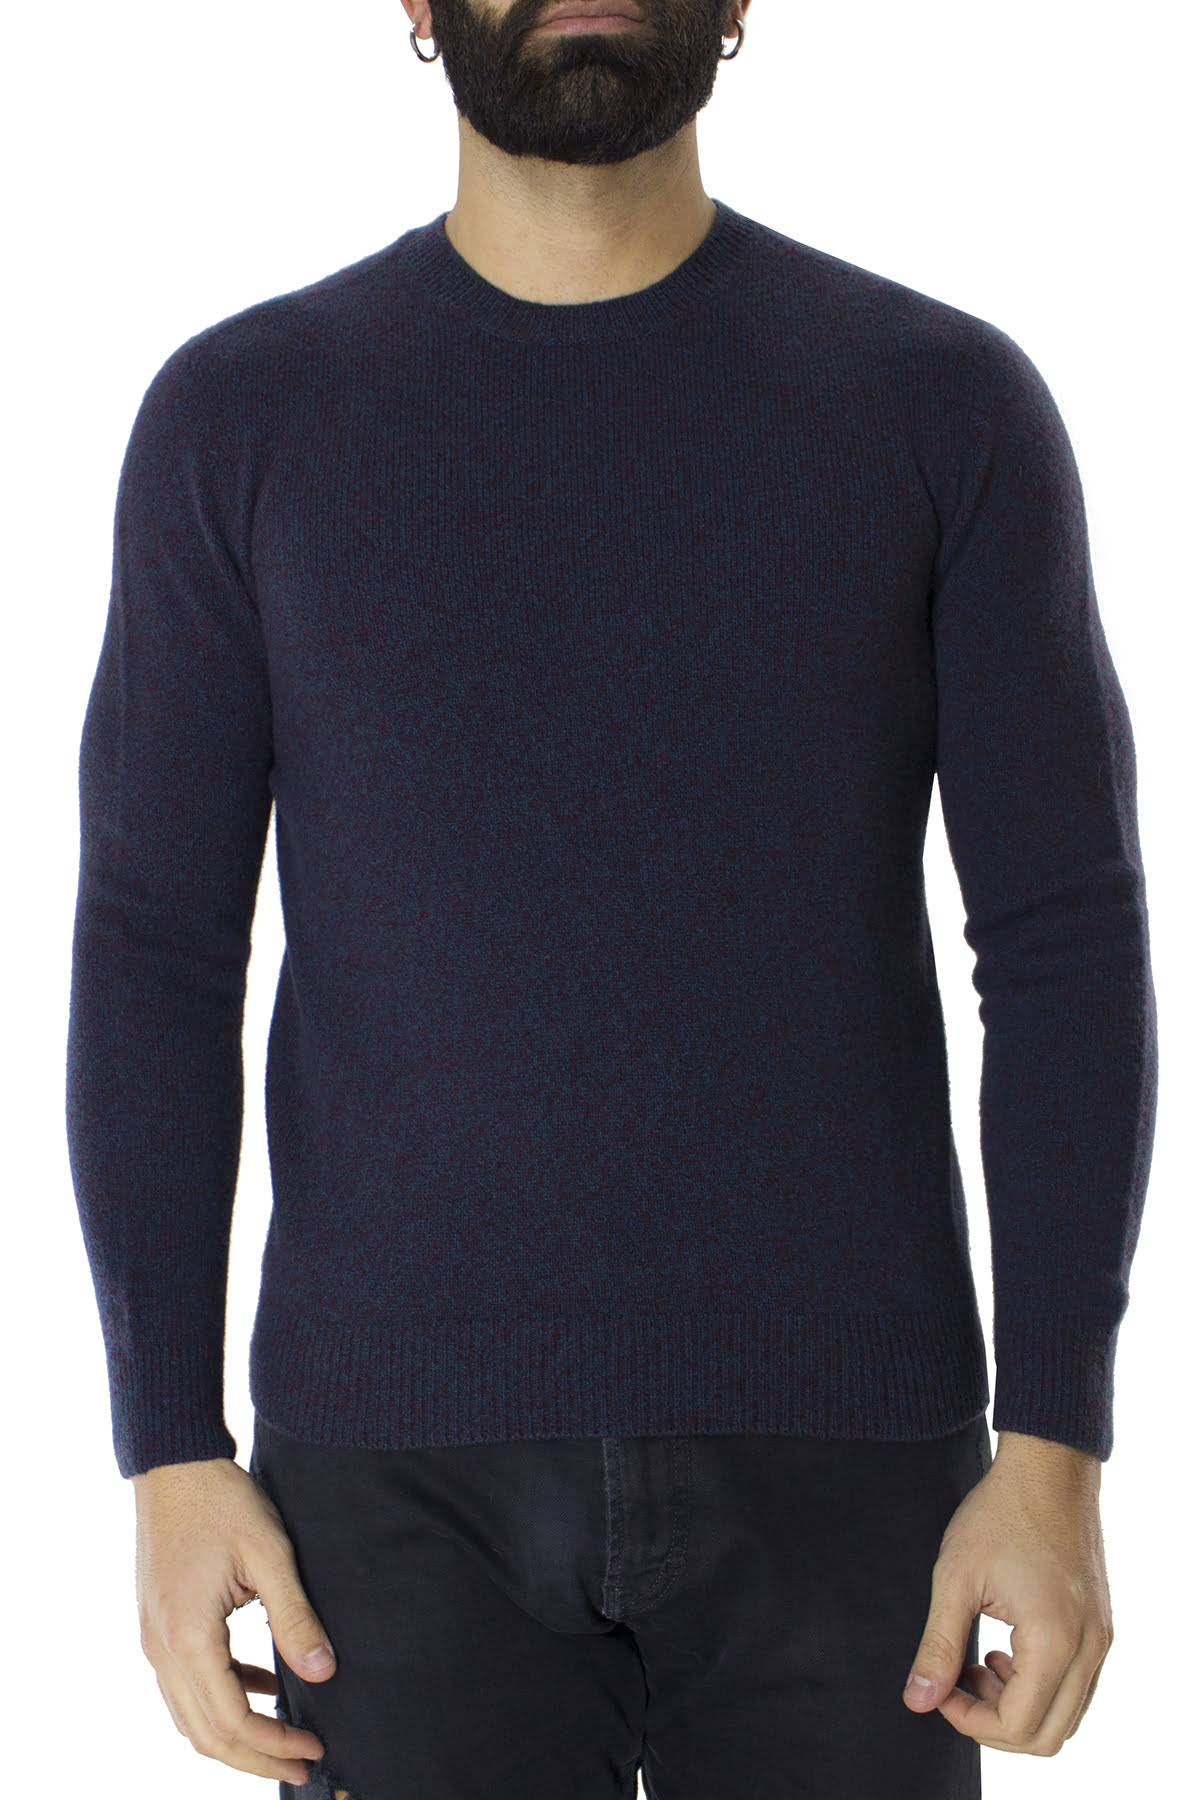 Maglione uomo Girocollo azzurro effetto melange bordeaux in lana 100% slim fit